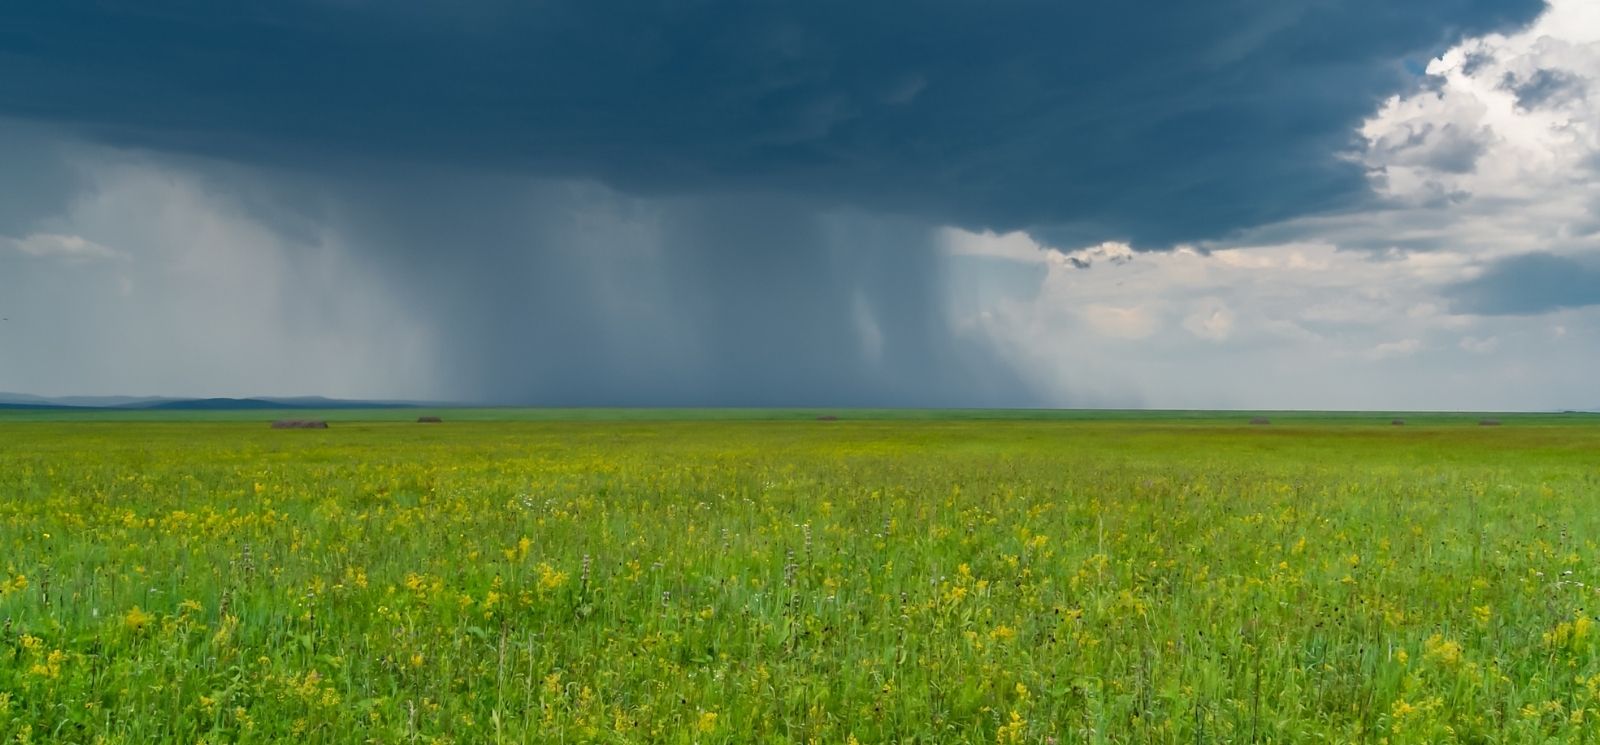 Rain storm in a field